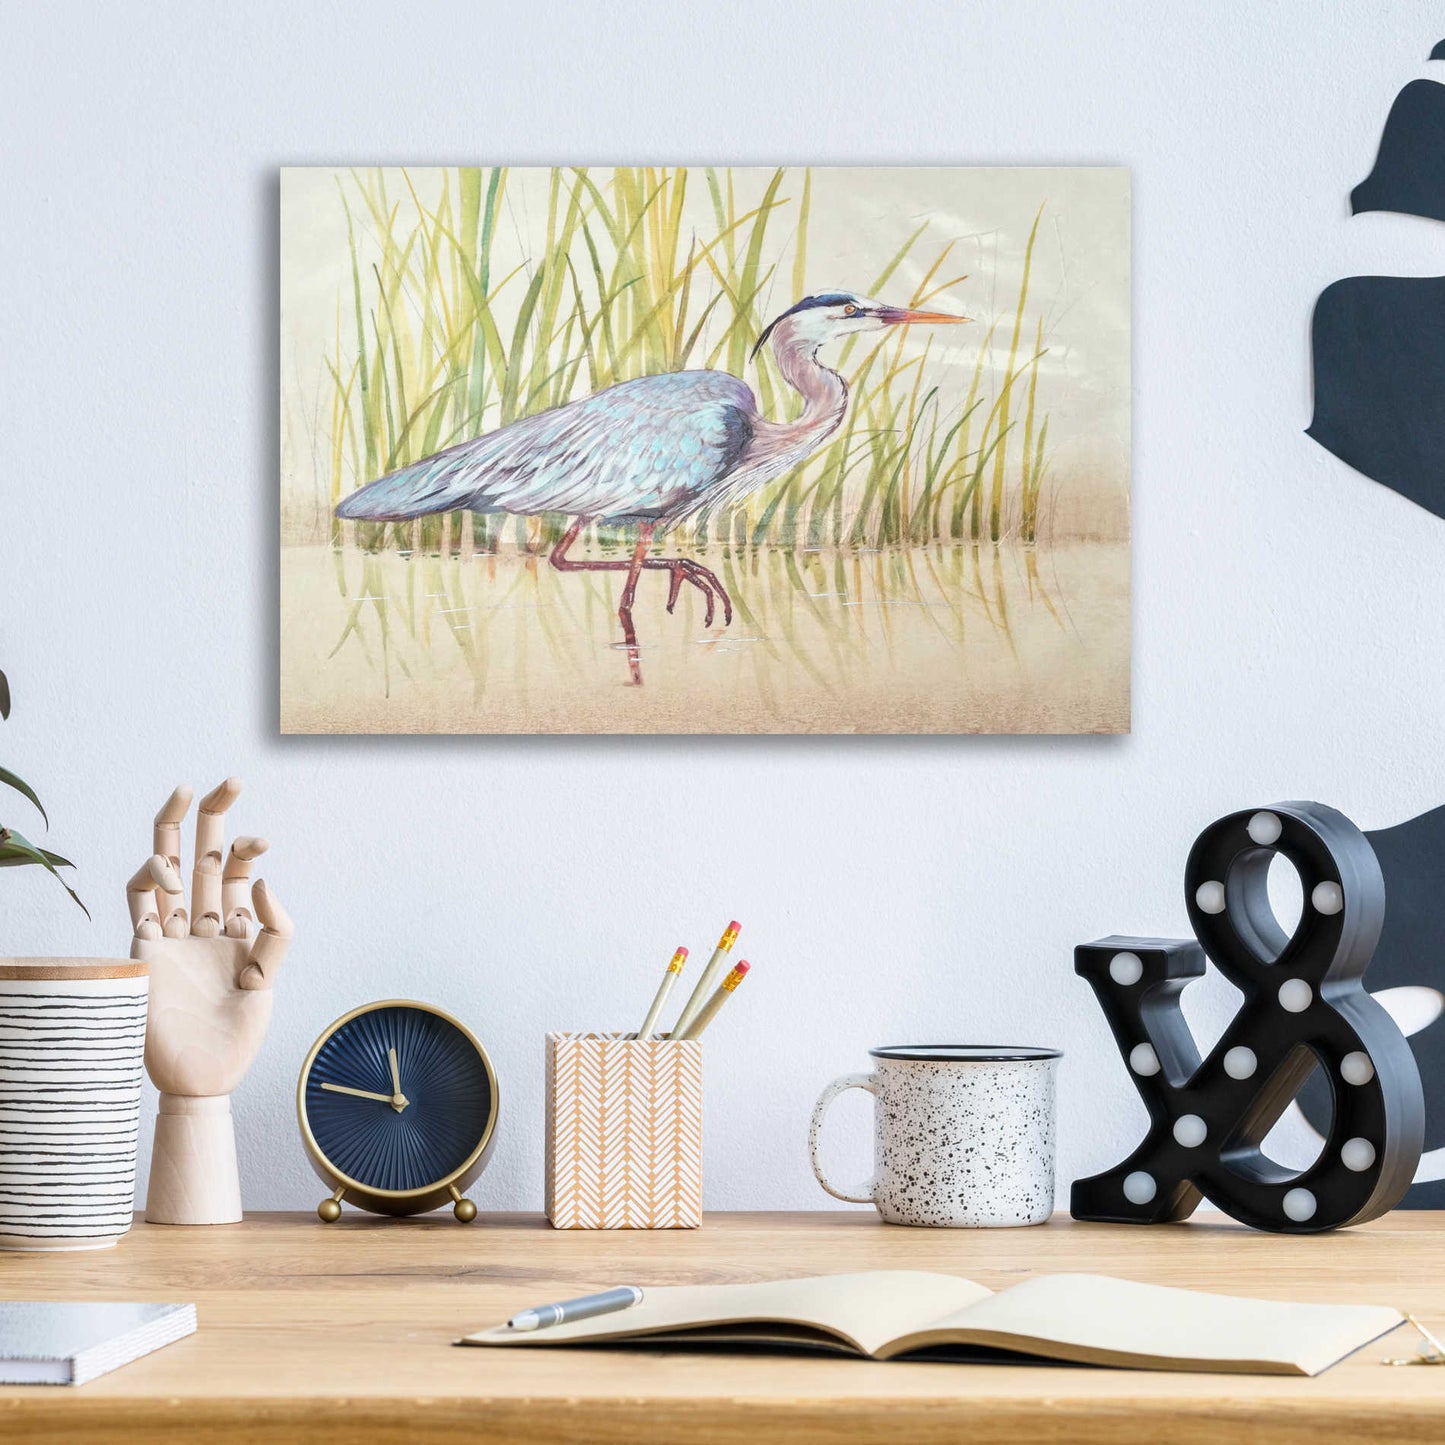 Epic Art 'Heron & Reeds I' by Tim O'Toole, Acrylic Glass Wall Art,16x12